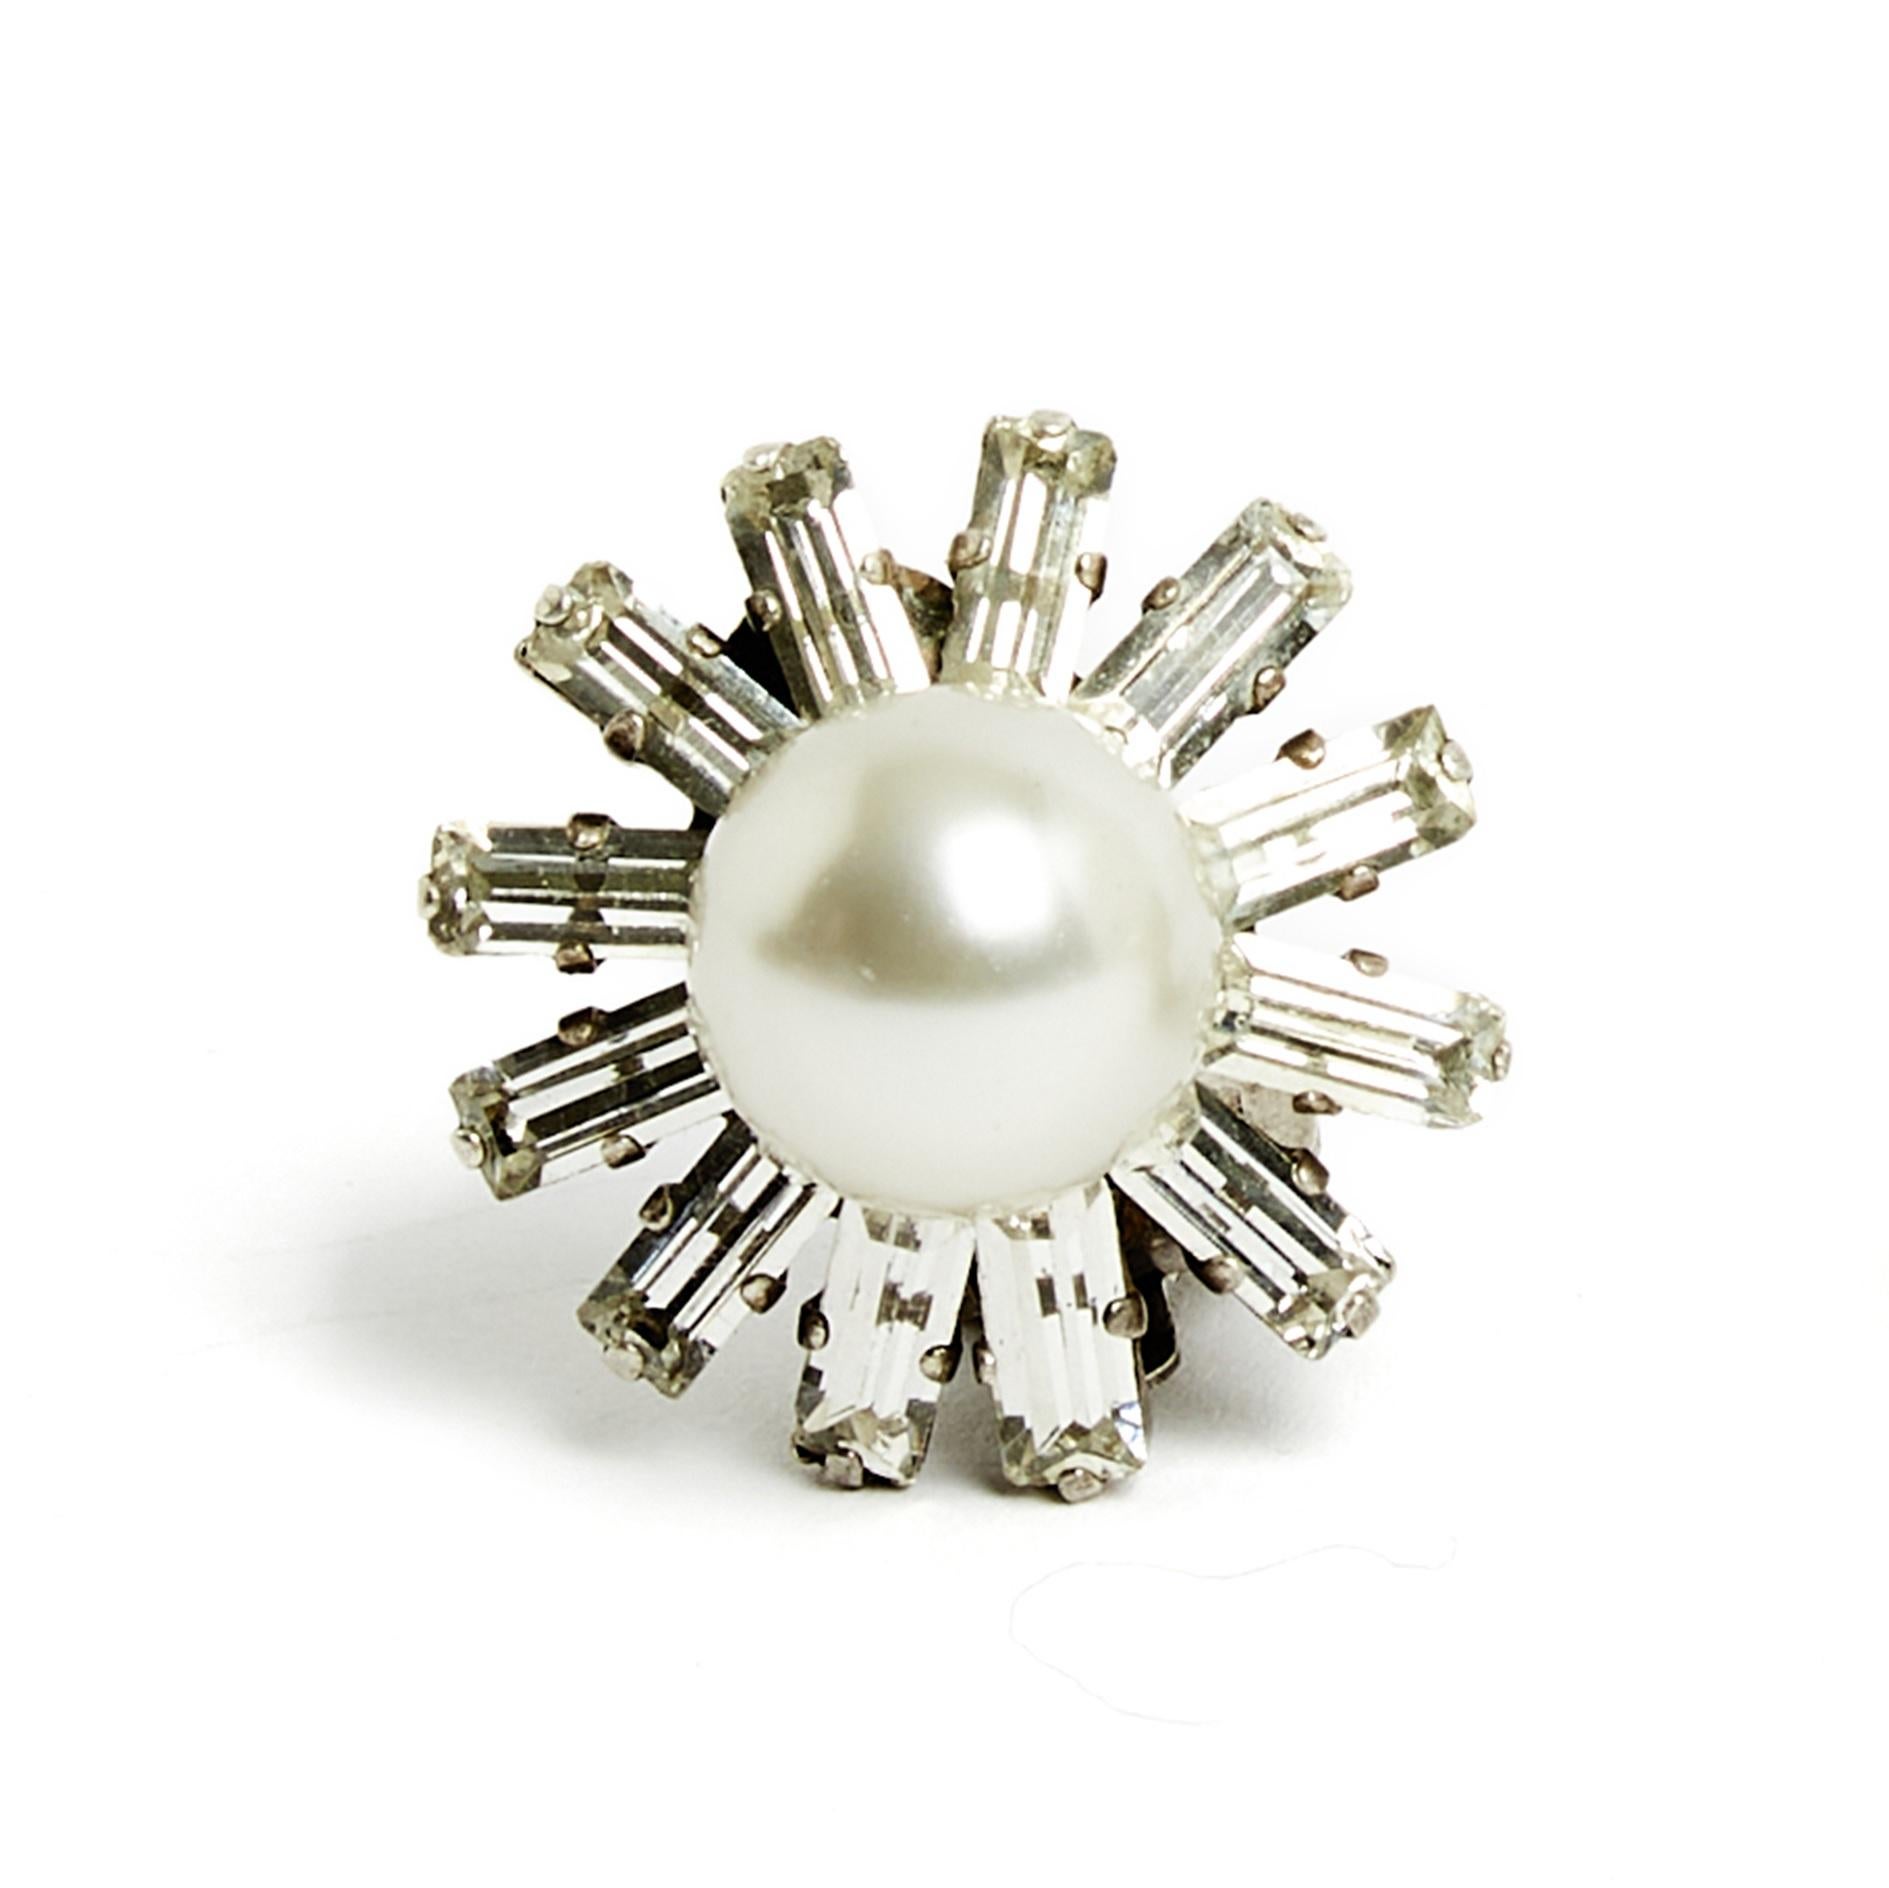 Boucles d'oreilles Chanel Haute Couture, clips en métal argenté composés d'une grosse perle fantaisie entourée de strass baguettes étoilés blancs. Diamètre 2.5 cm. Les boucles d'oreilles sont probablement vintage mais ils sont en très bon état,